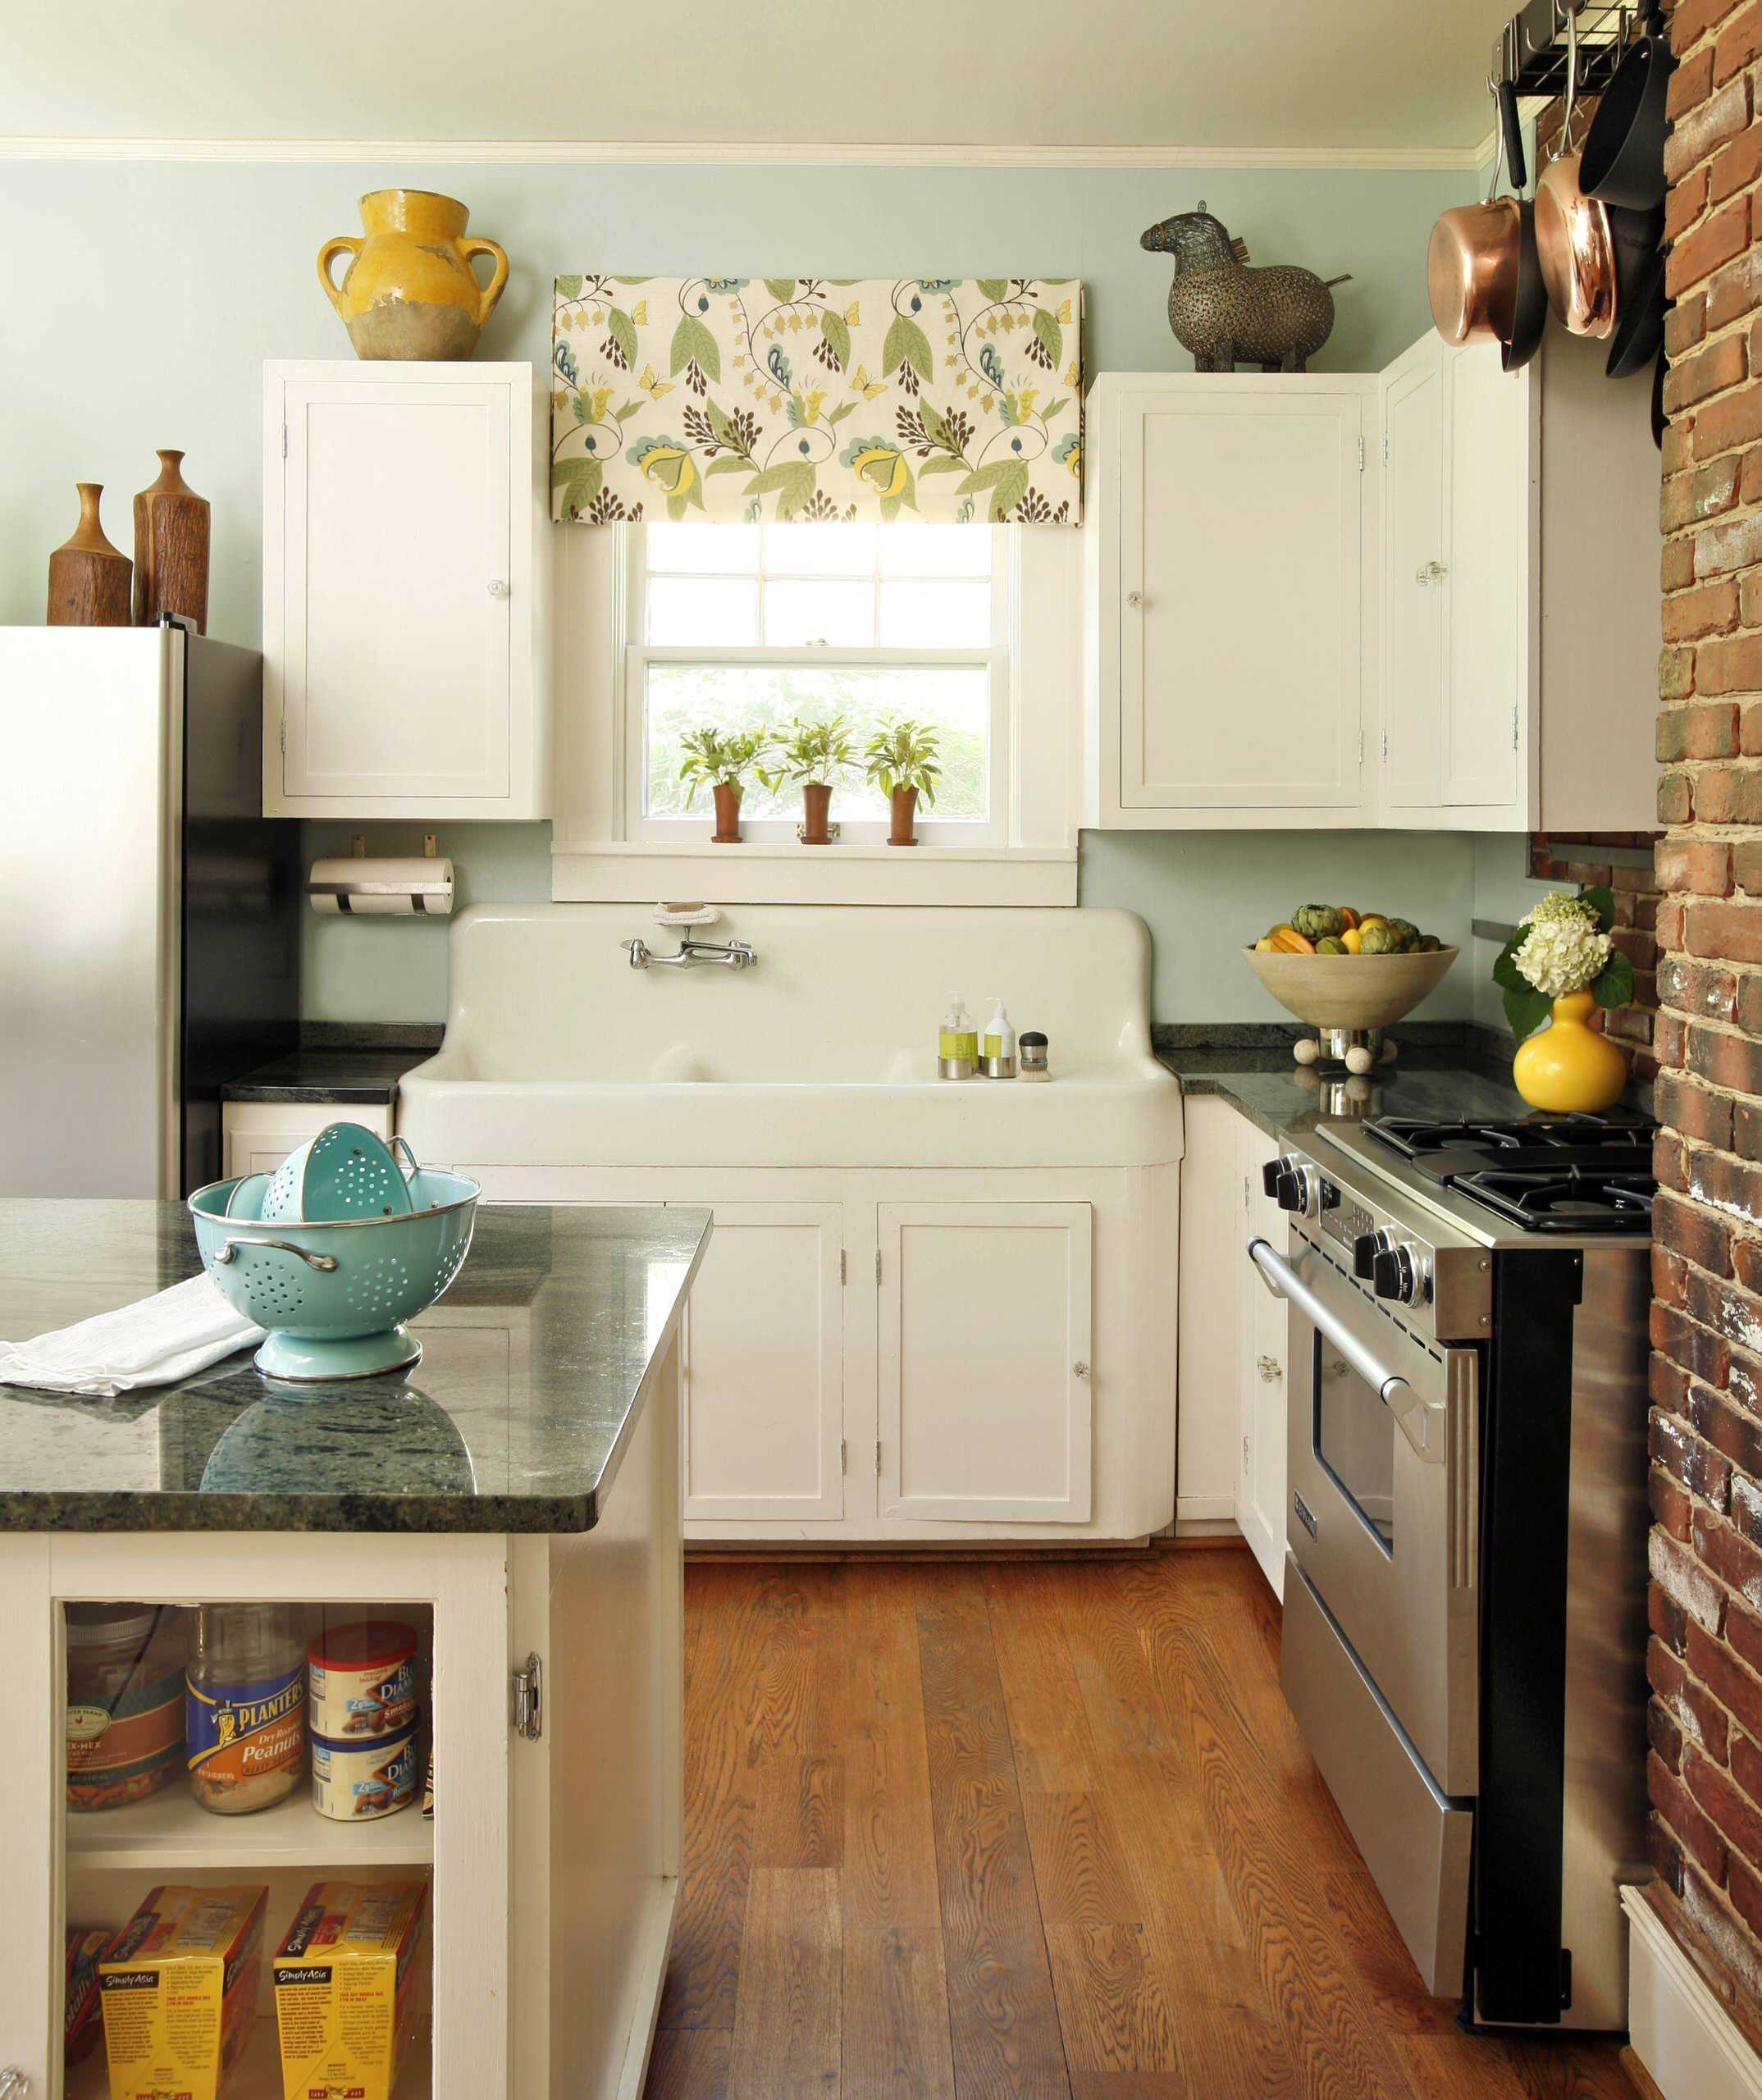  кухня: как сделать маленькую кухню красивой - 20 фото